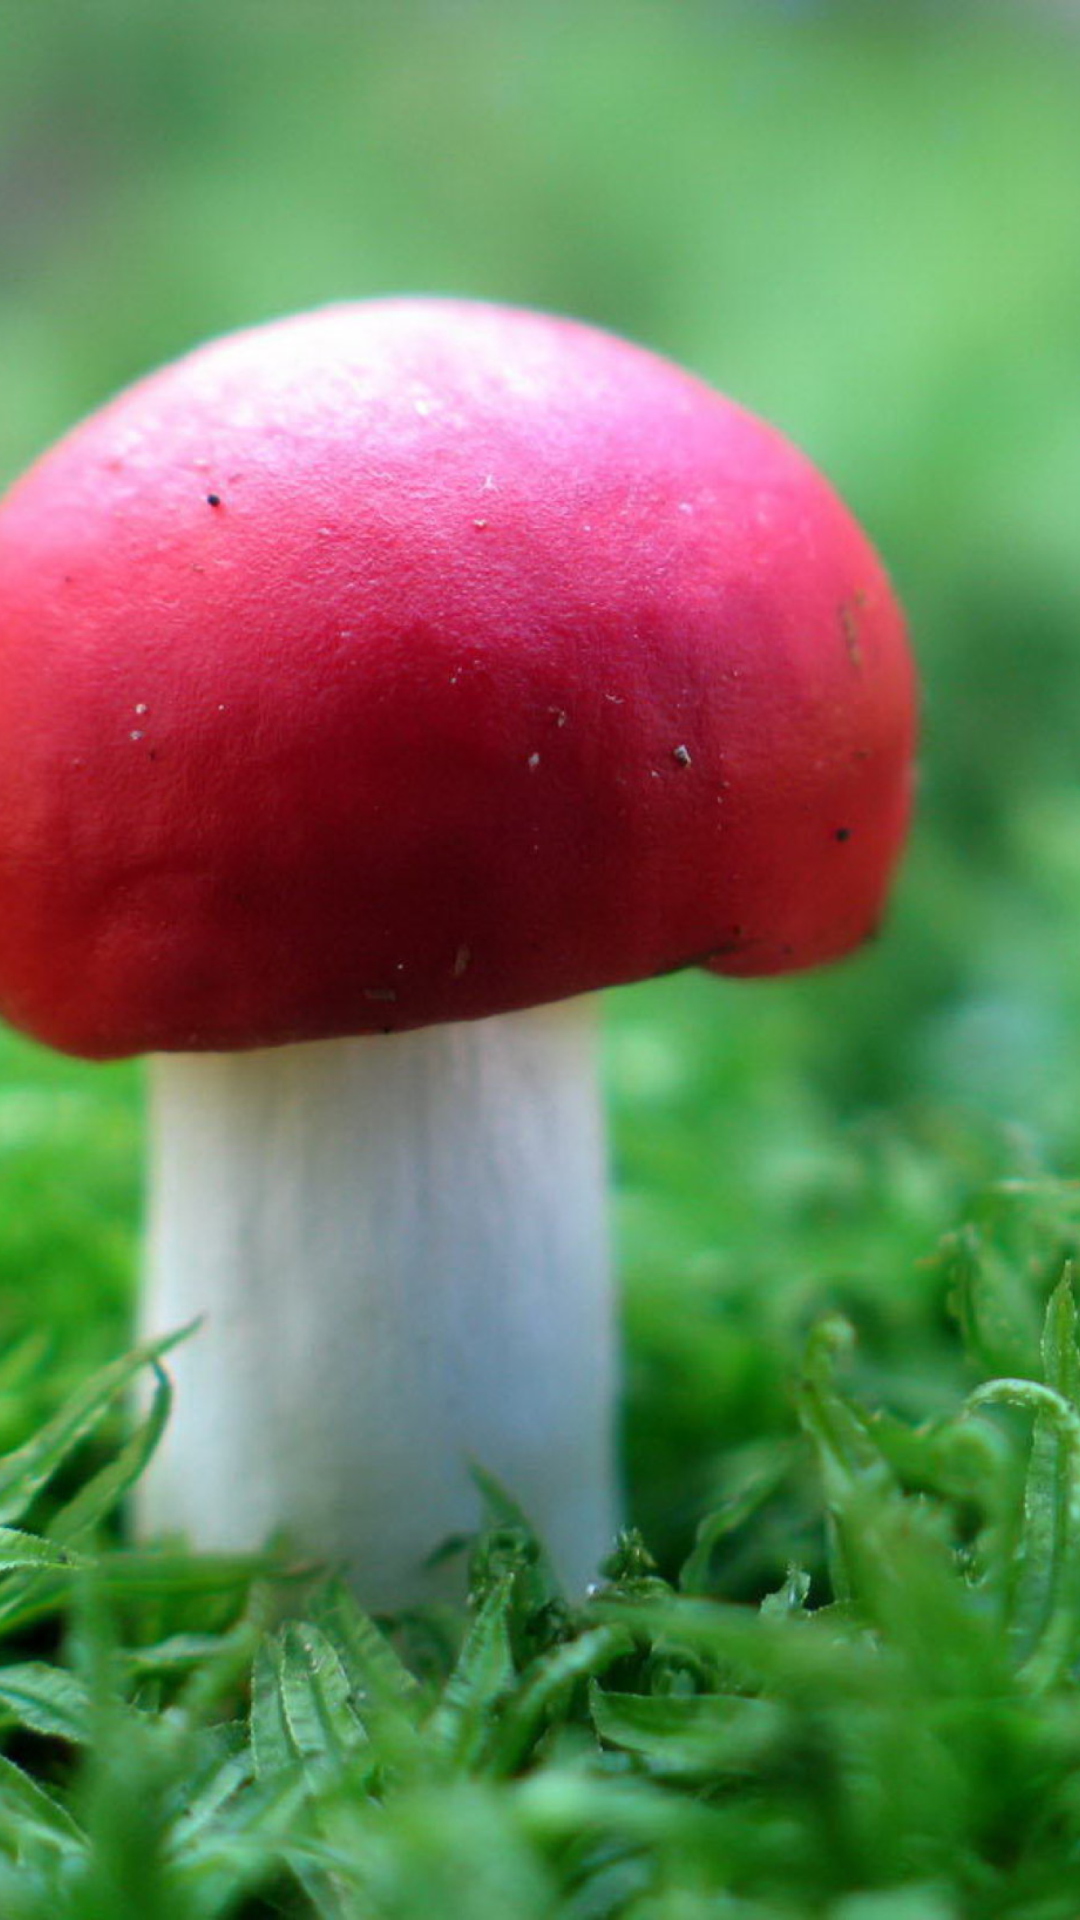 съедобные грибы с красной шляпкой фото